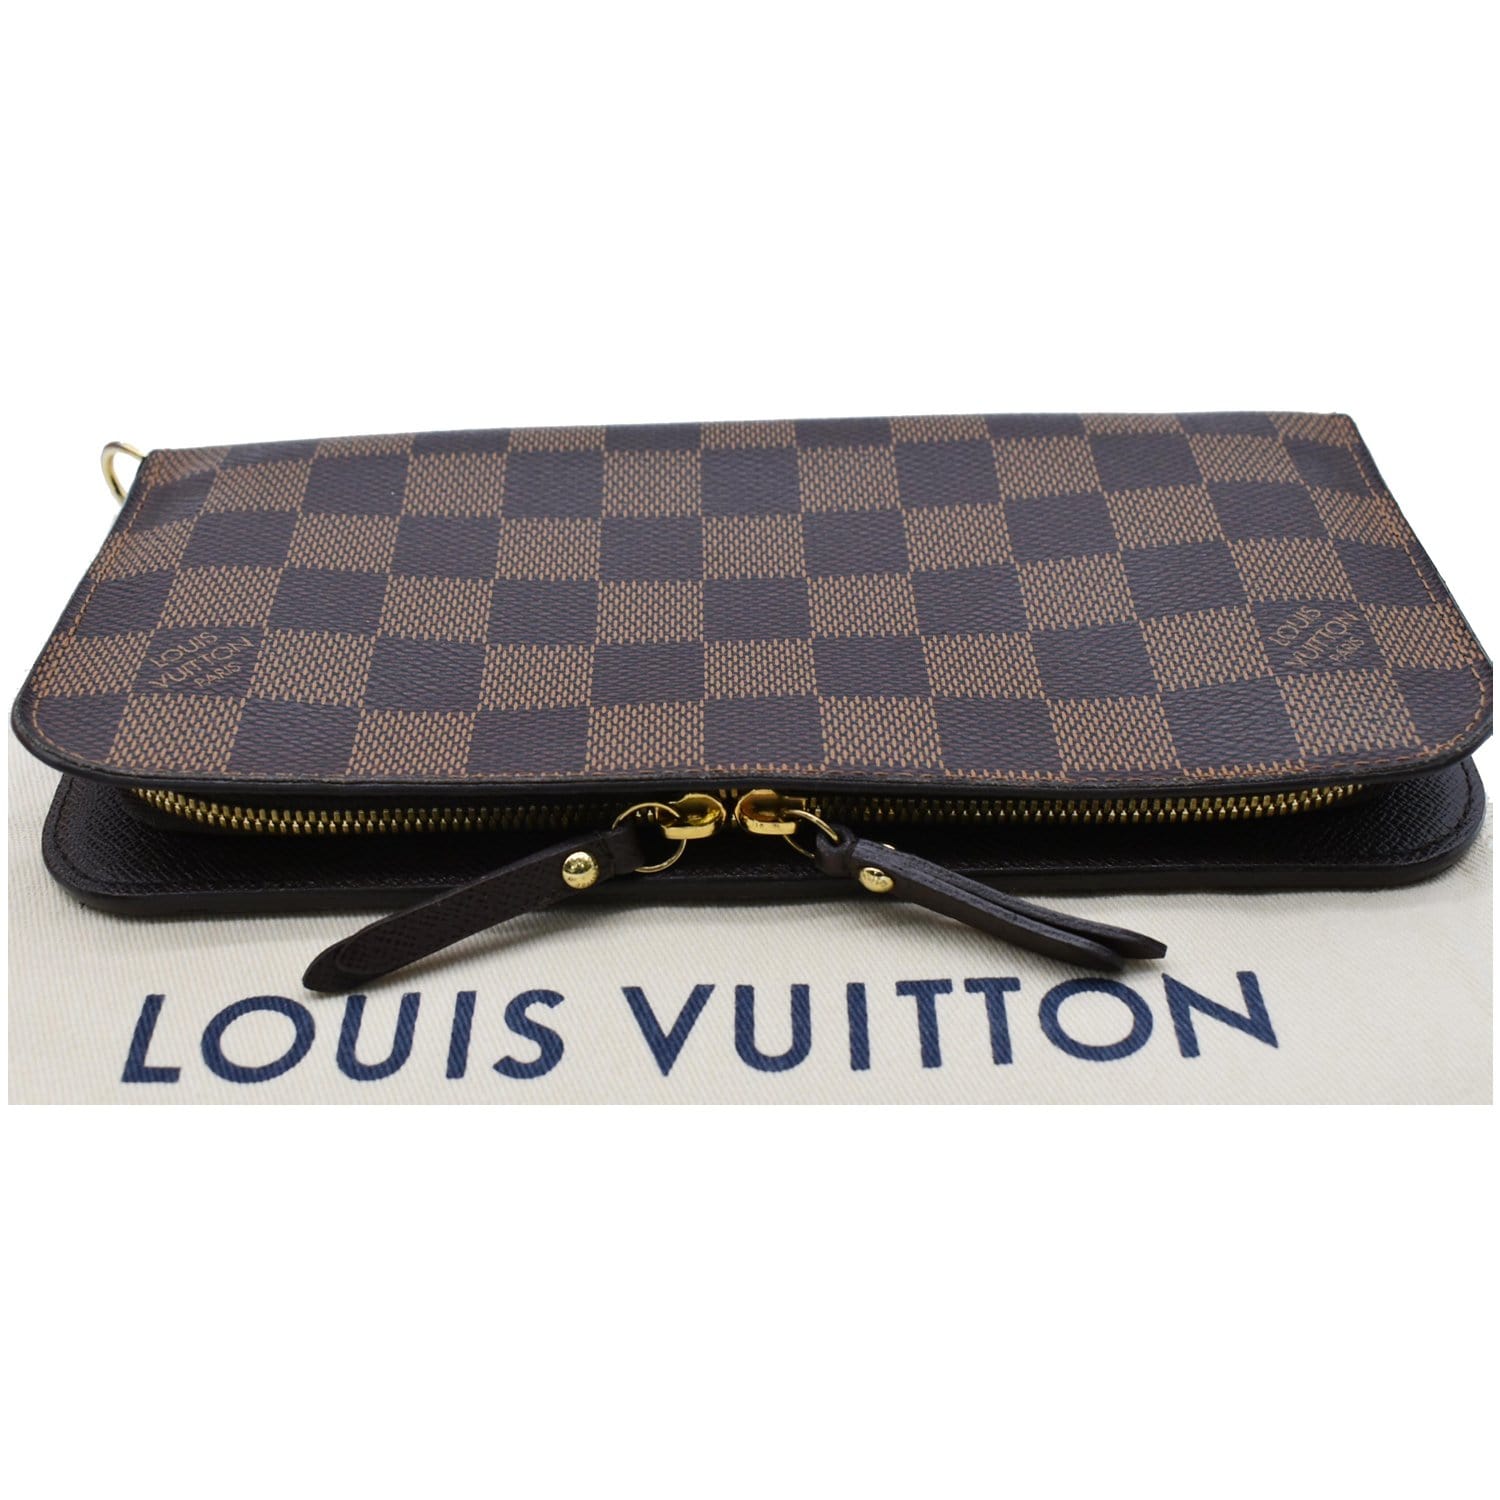 100% AUTHENTIC Louis Vuitton Insolite Wallet Damier Azur